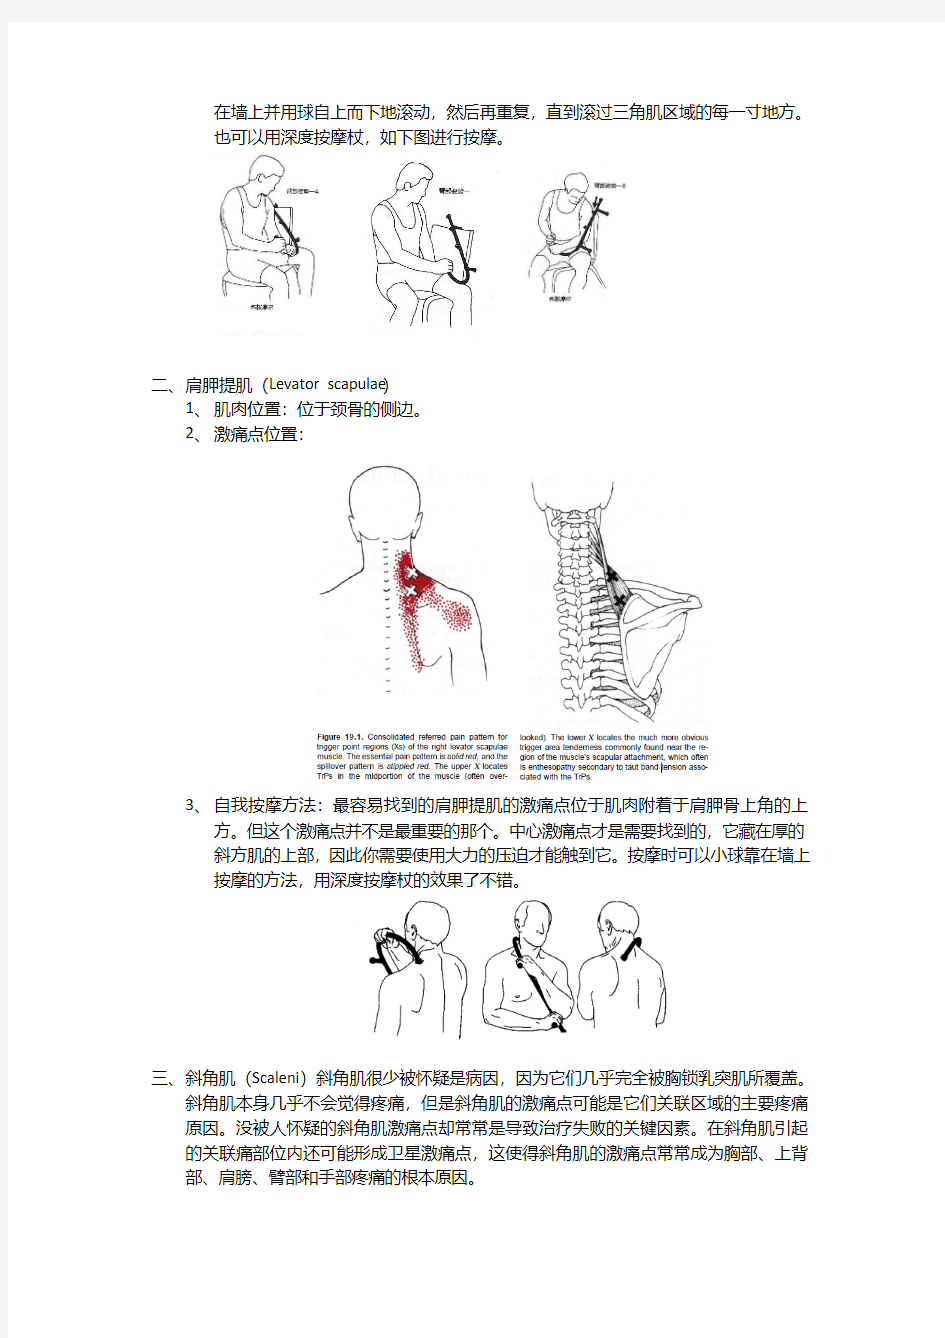 激痛点和肌肉疼痛自我按摩治疗(3)后肩部疼痛